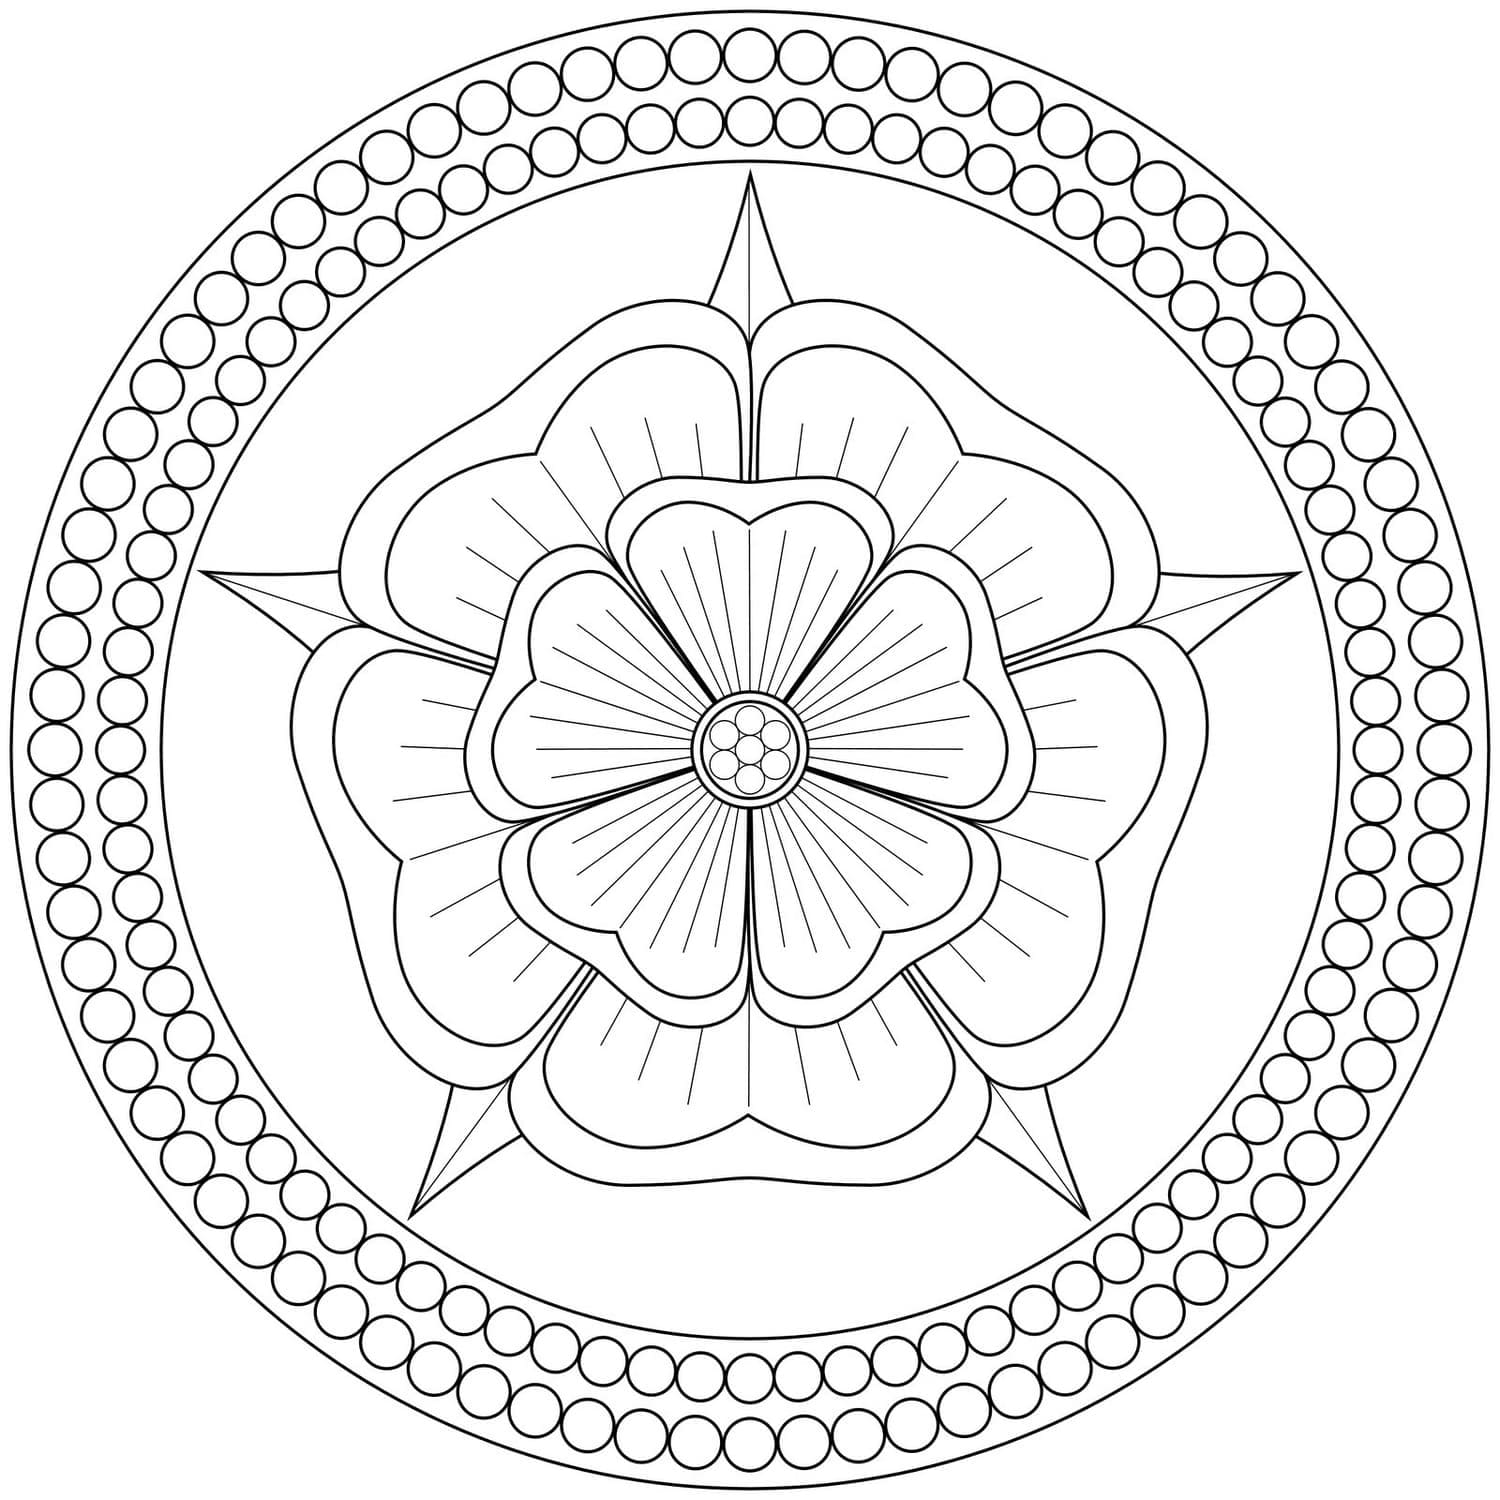 Ausmalbilder Mandala Blumen - Ausmalbilder zum ausdrucken